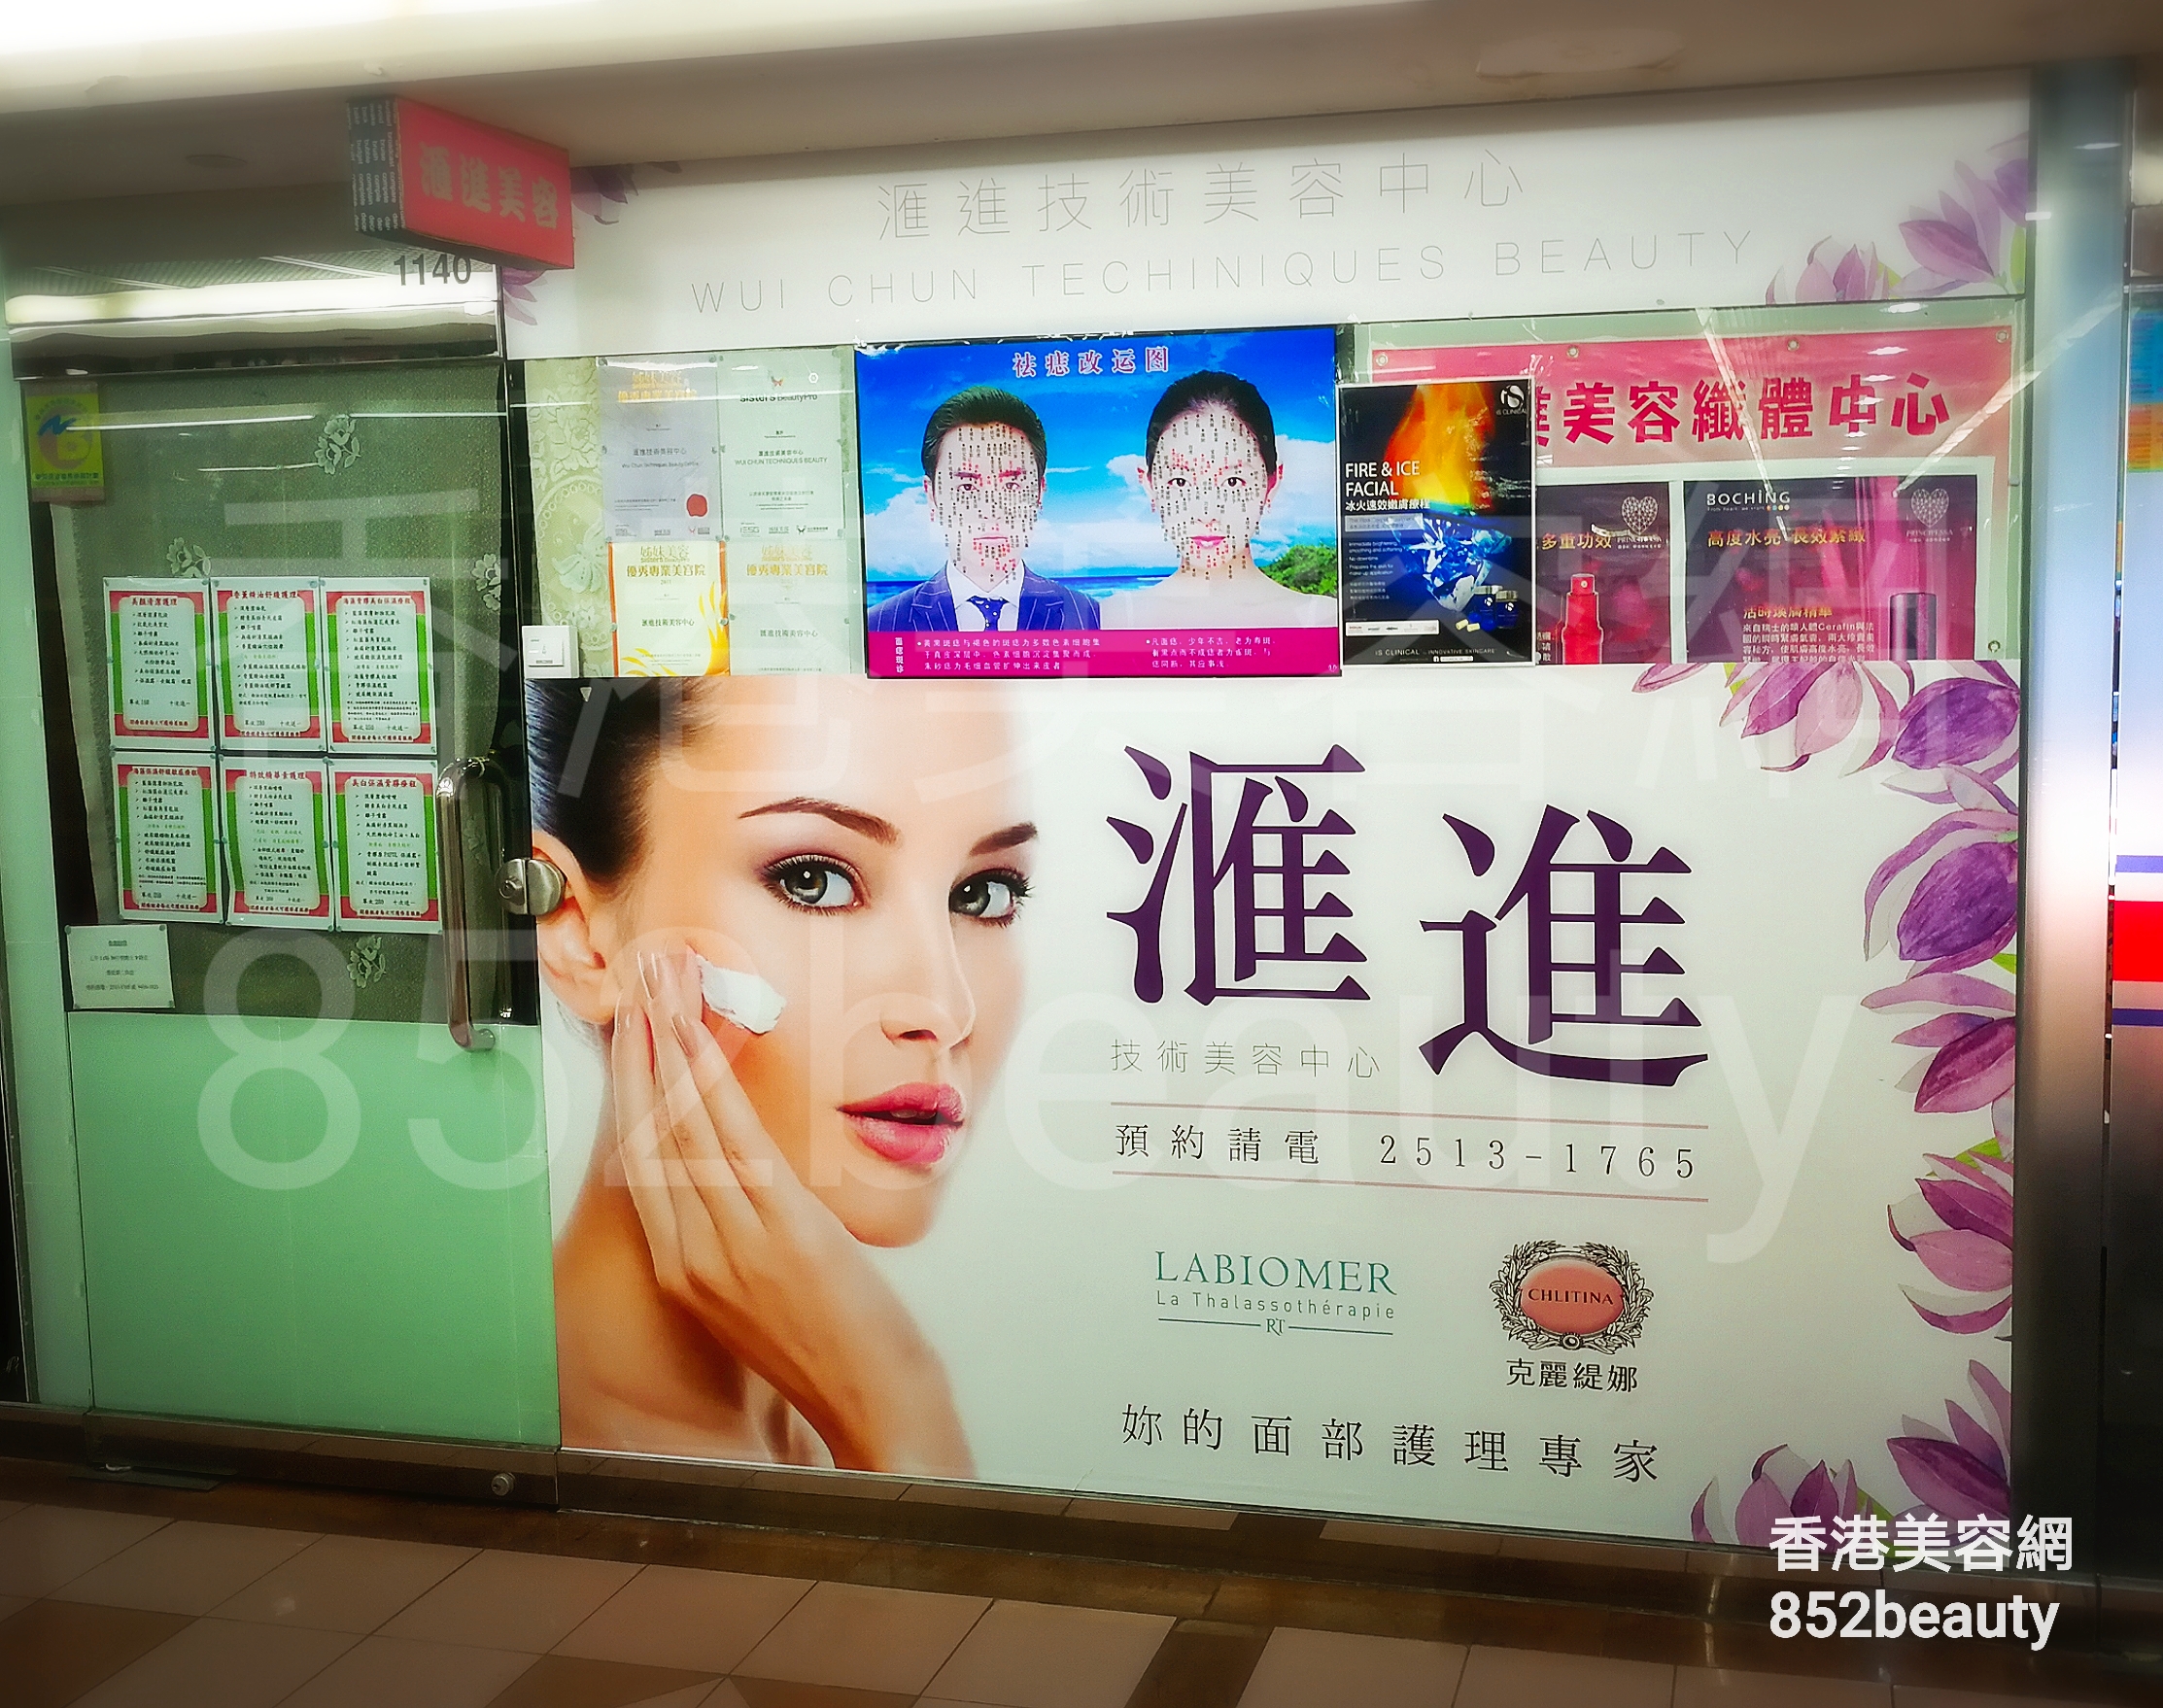 香港美容網 Hong Kong Beauty Salon 美容院 / 美容師: 滙進技術美容中心